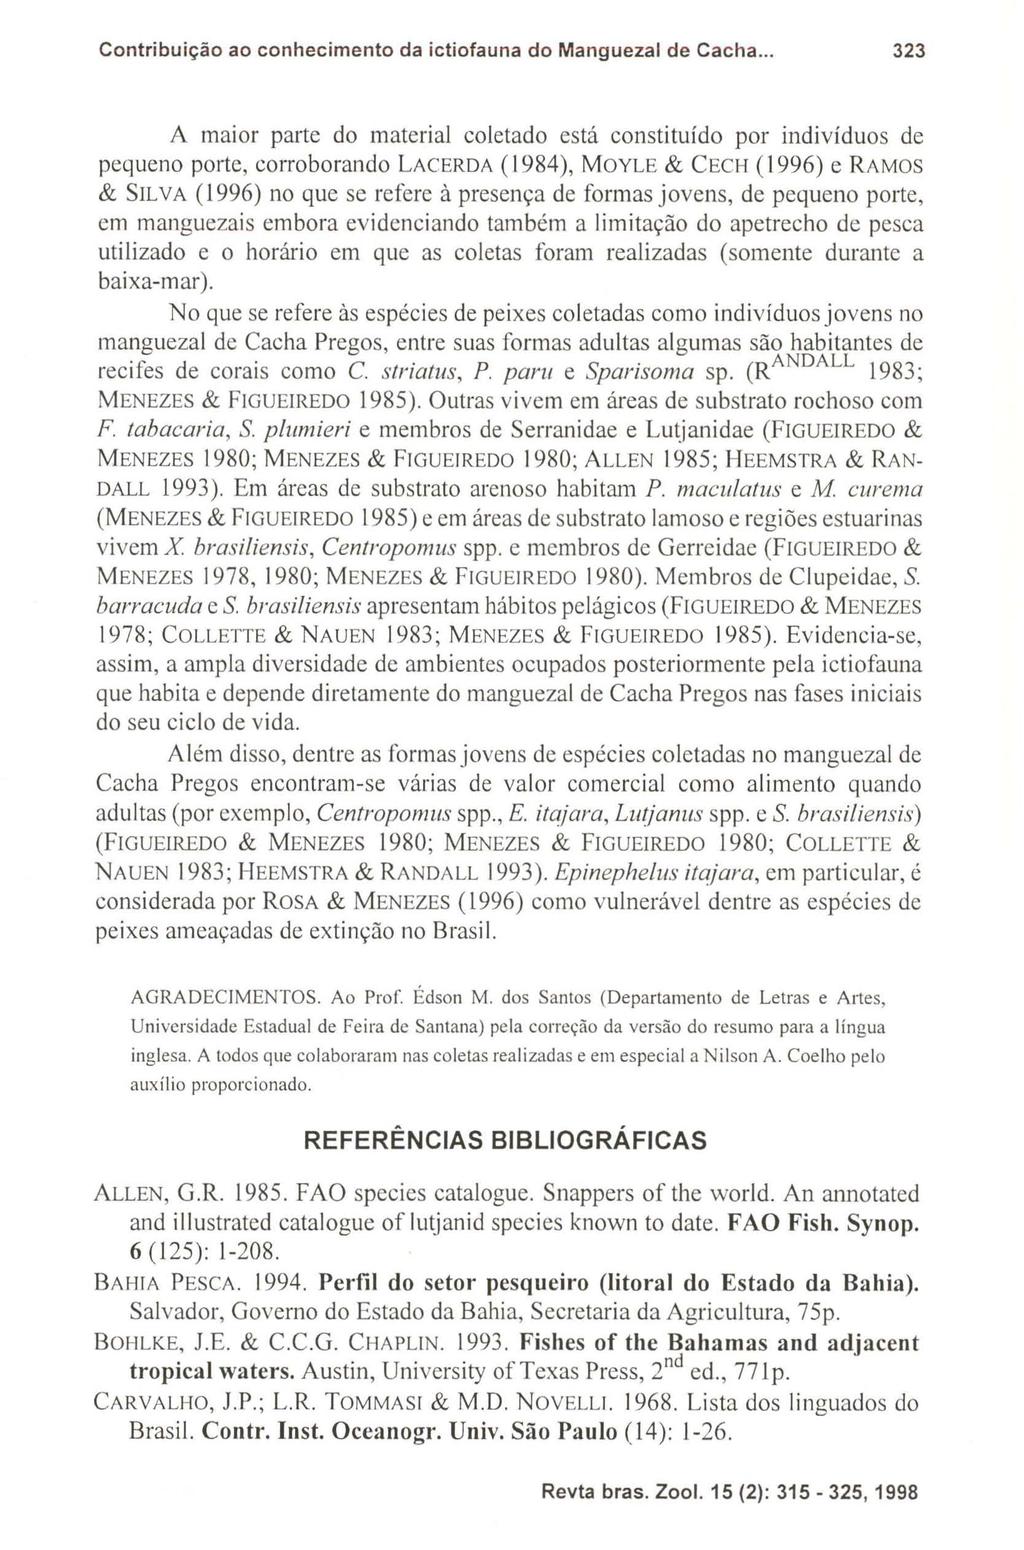 Contribuição ao conhecimento da ictiofauna do Manguezal de Cacha.